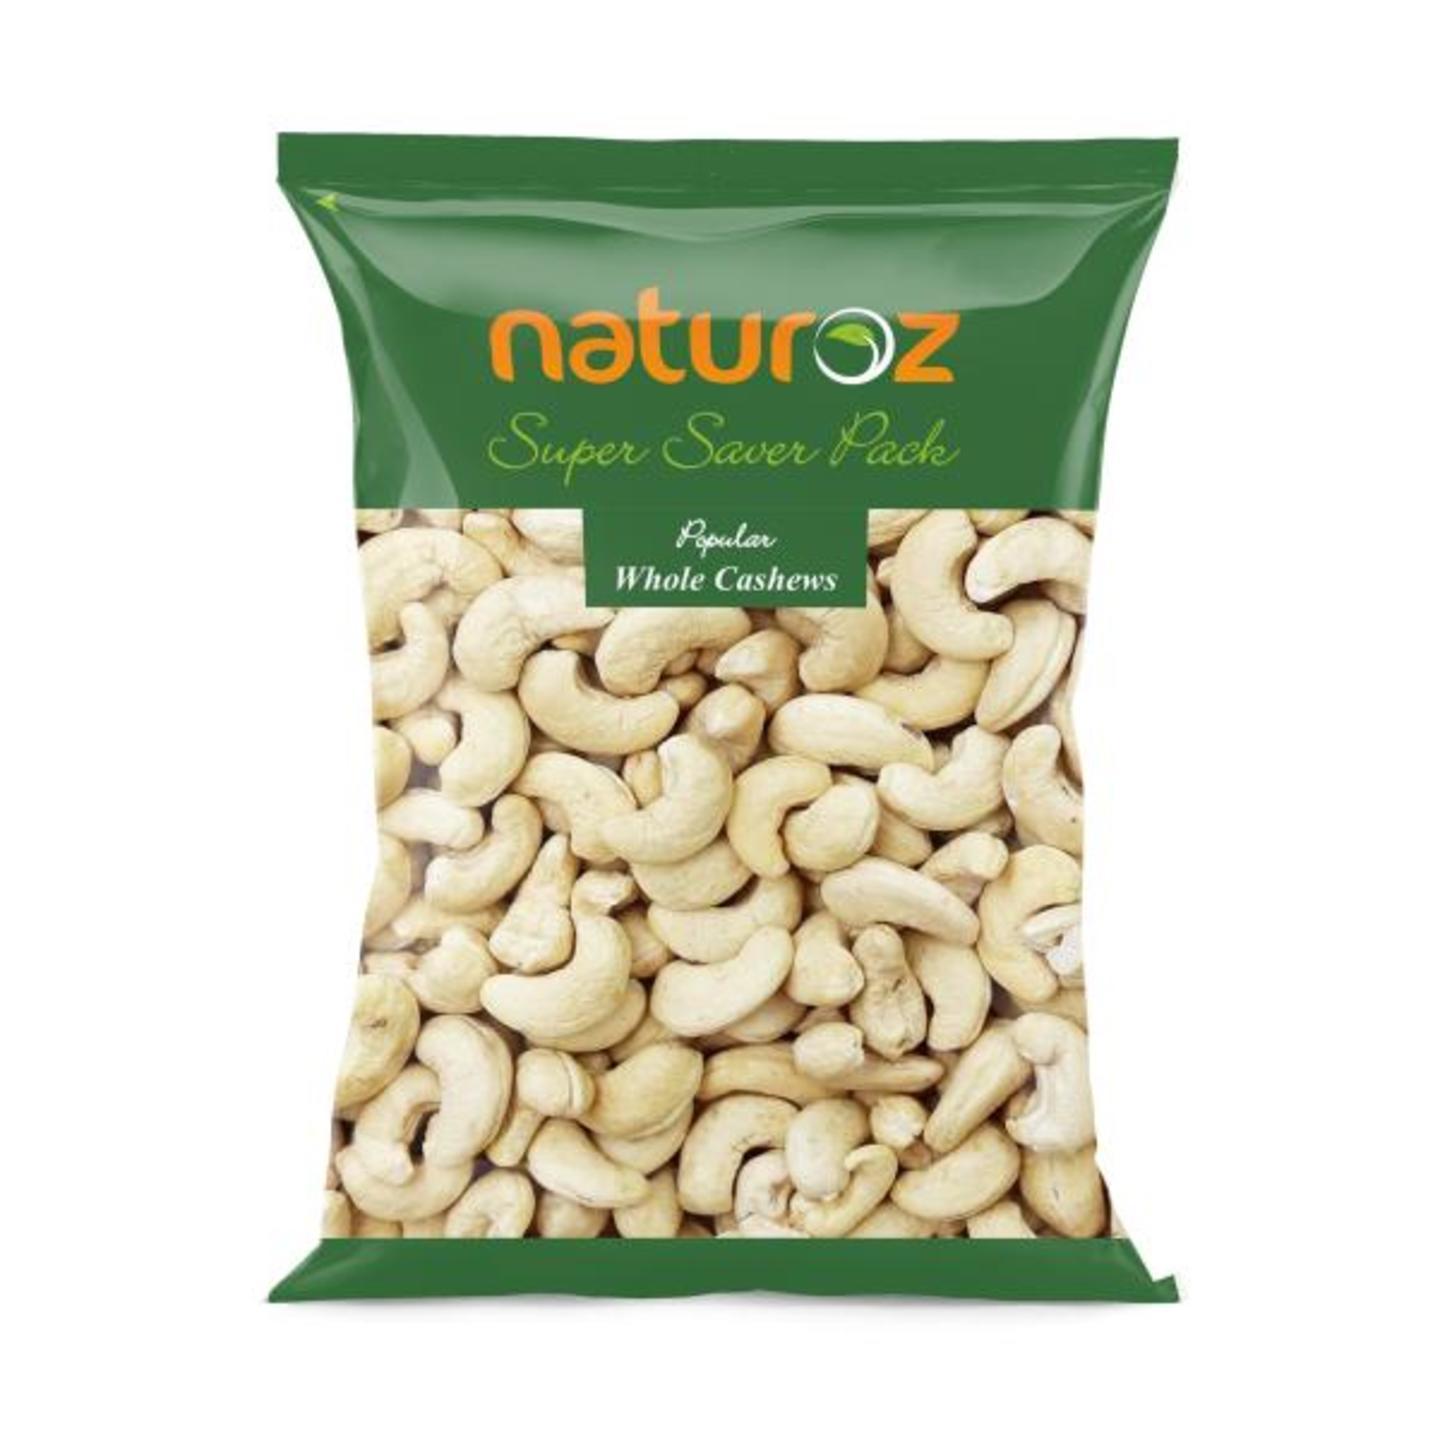 Naturoz Popular Whole Cashews 1 kg